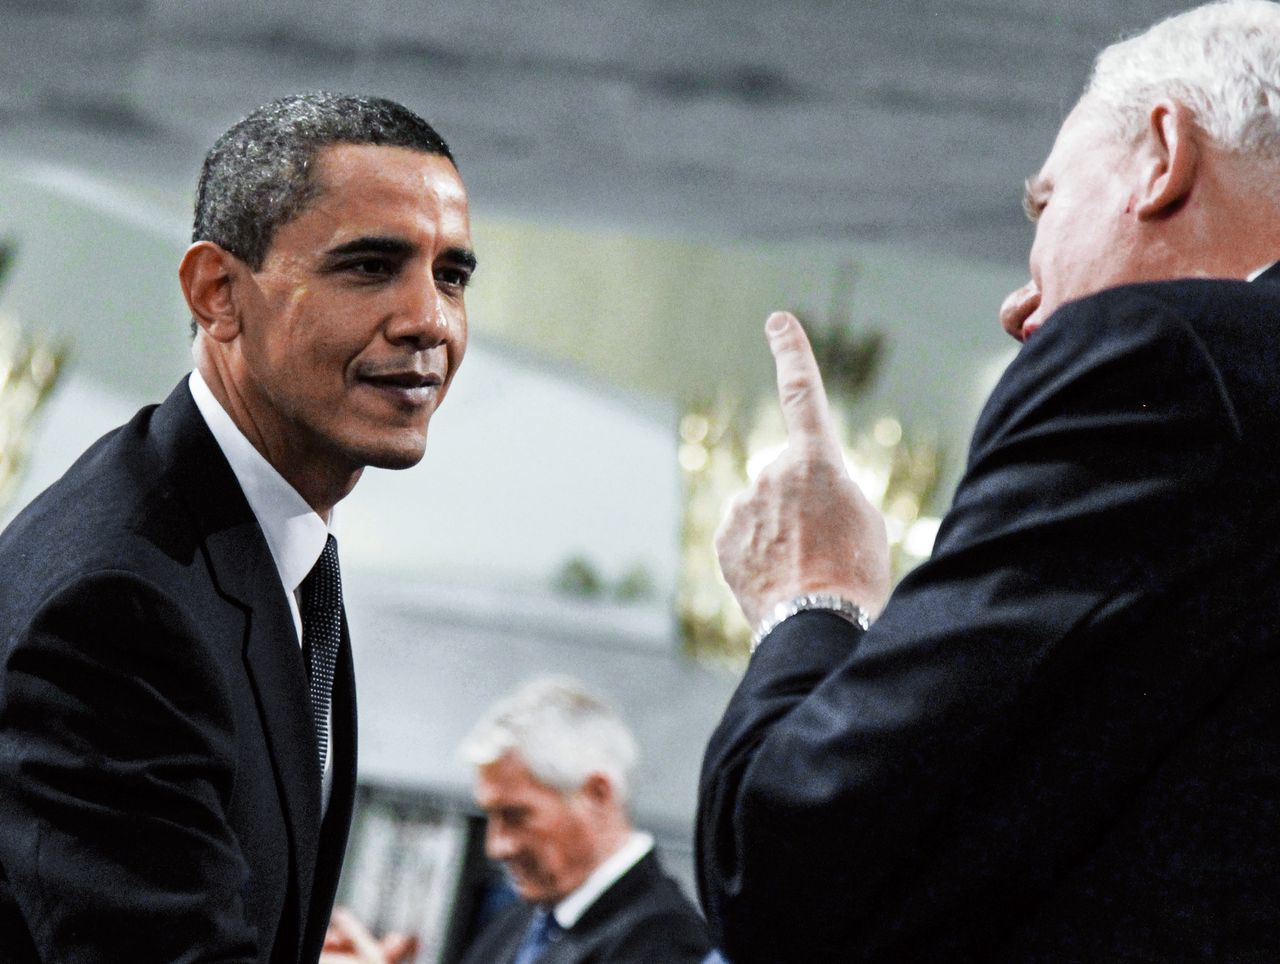 President Obama in gesprek met de directeur van het Noorse Nobelinstituut, Geir Lundestad, voor de uitreiking van de Vredesprijs op 10 december 2009.